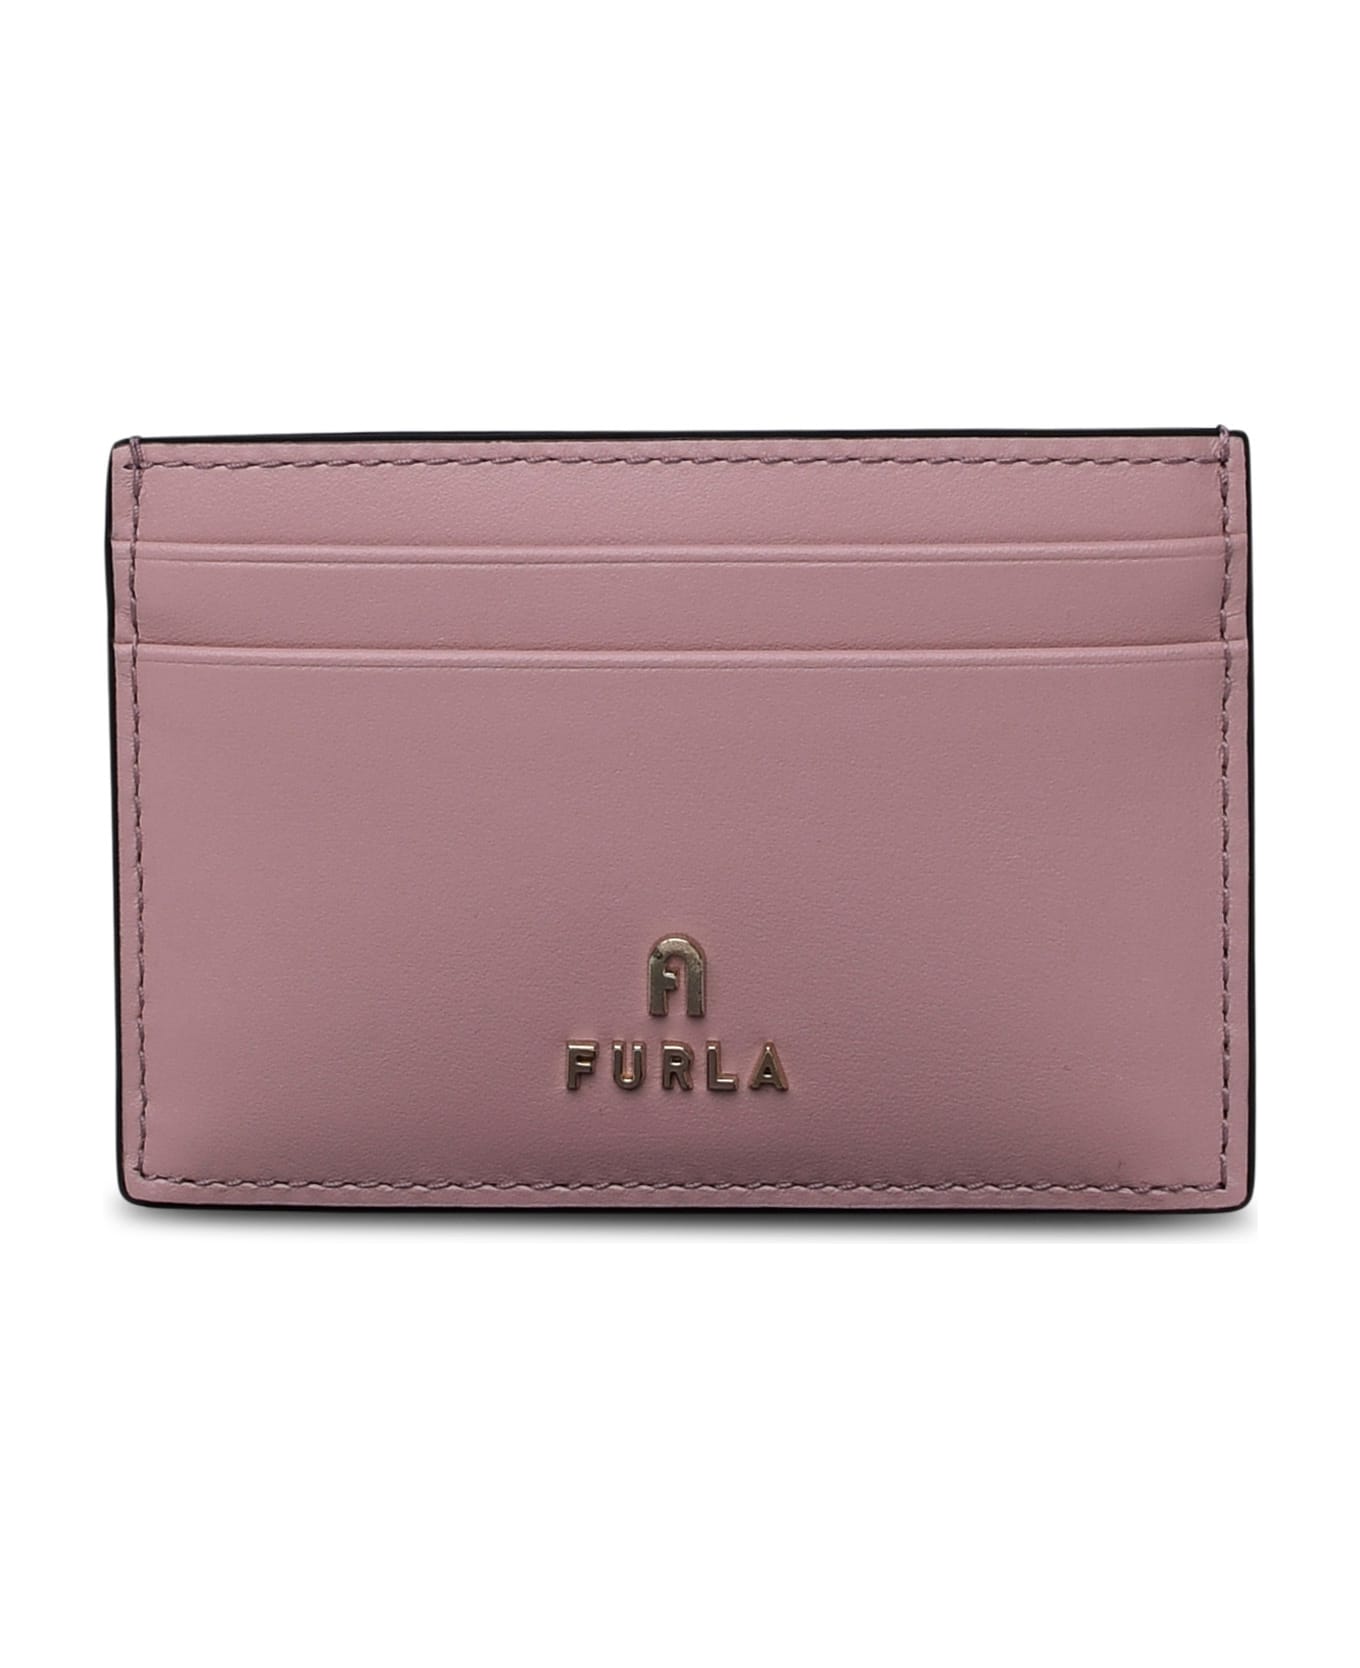 Furla Pink Leather Cardholder - Pink